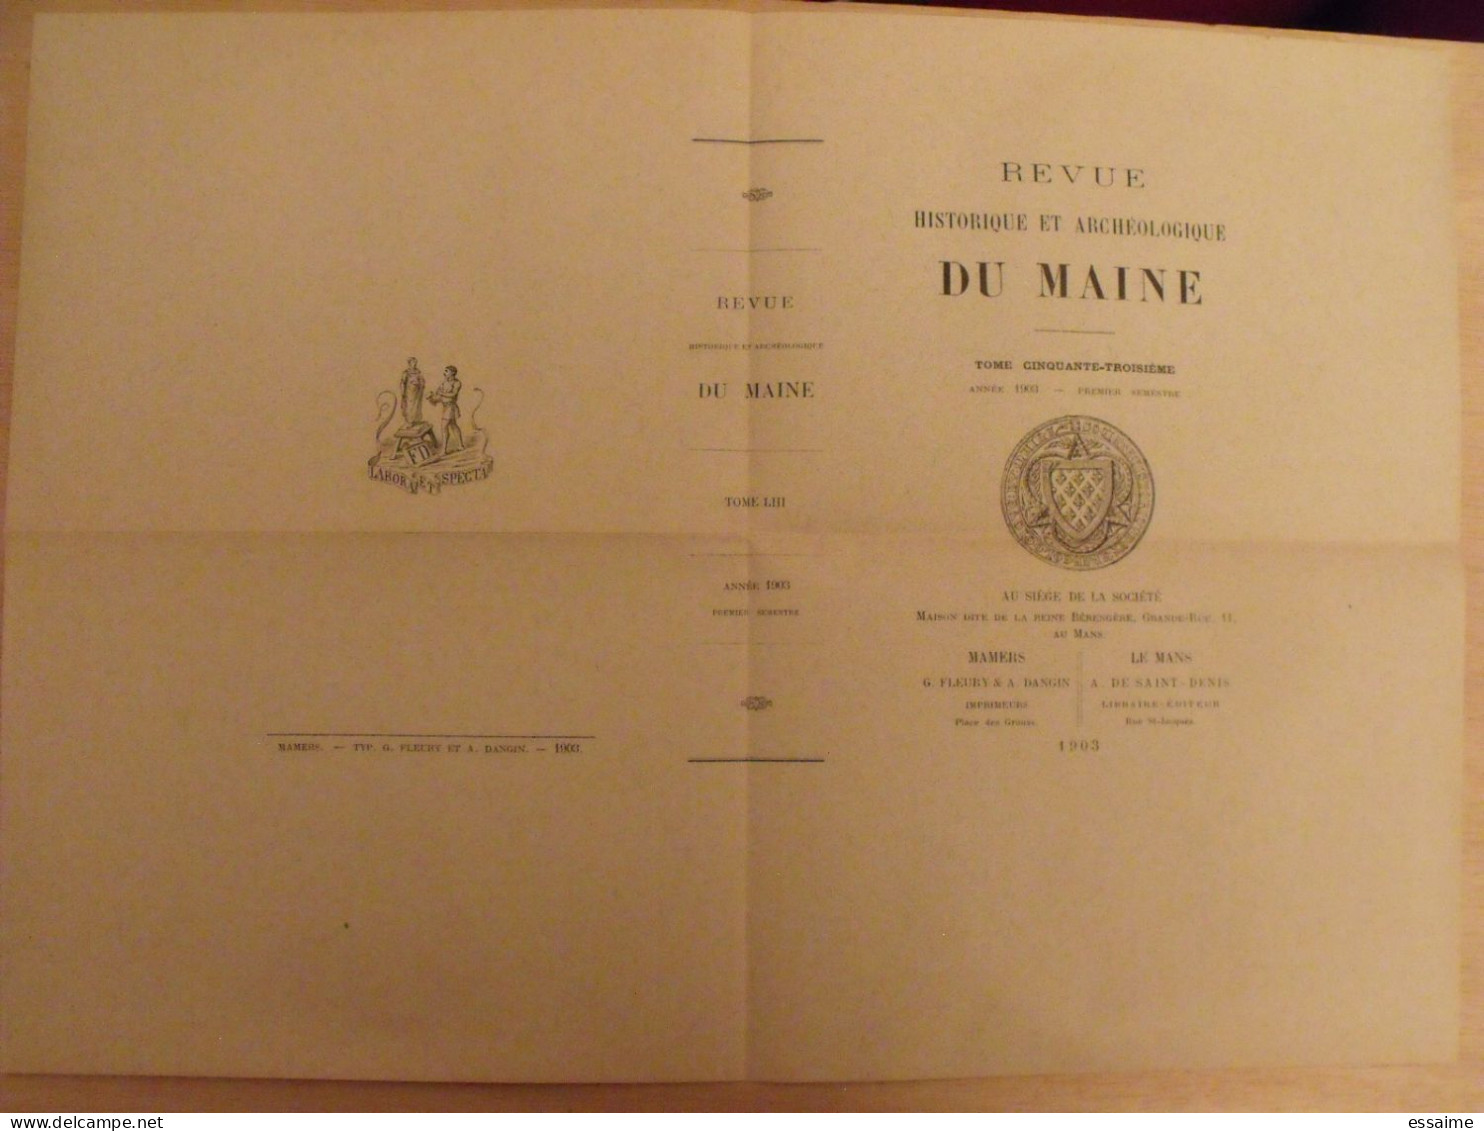 revue historique et archéologique du Maine. année 1903, 1er semestre (3 livraisons). tome LIII. Mamers, Le Mans